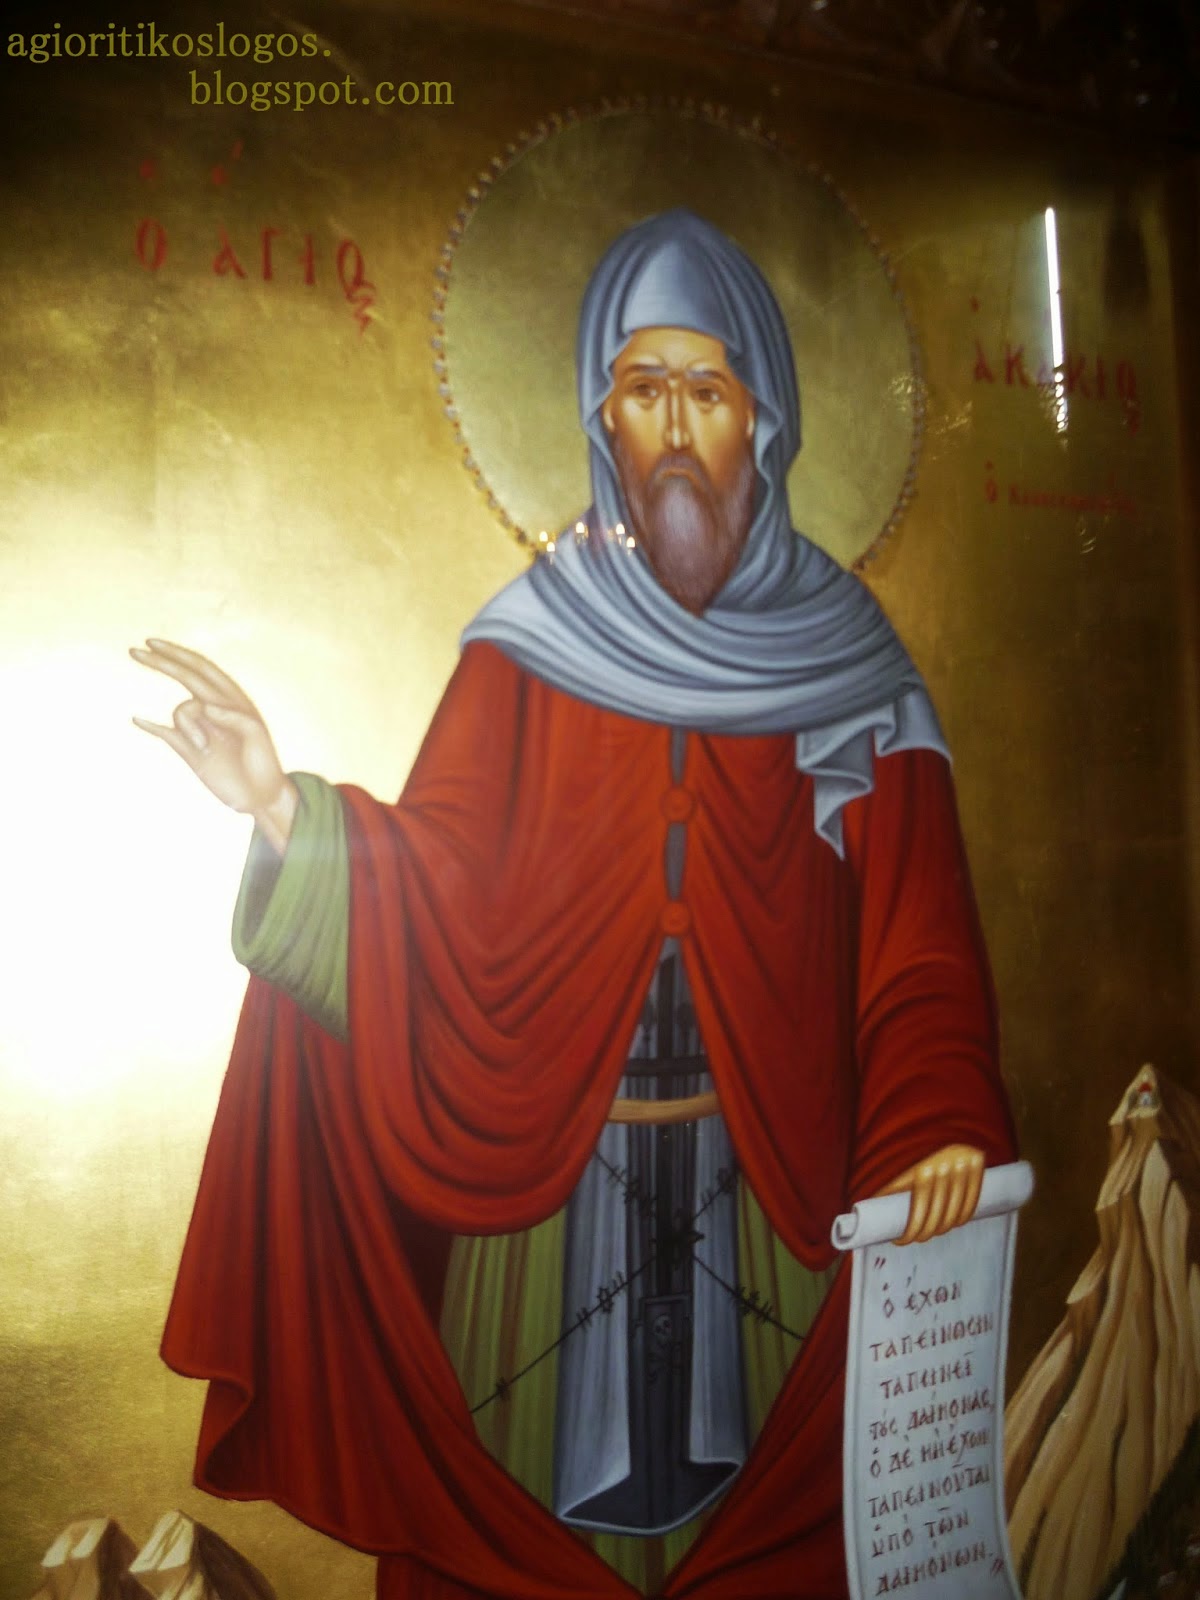 4708 - Ο εορτασμός της Μνήμης του Αγίου Ακακίου του Καυσοκαλυβίτου στην Αθήνα, την Κυριακή των Μυροφόρων 4 Μαΐου - Φωτογραφία 6